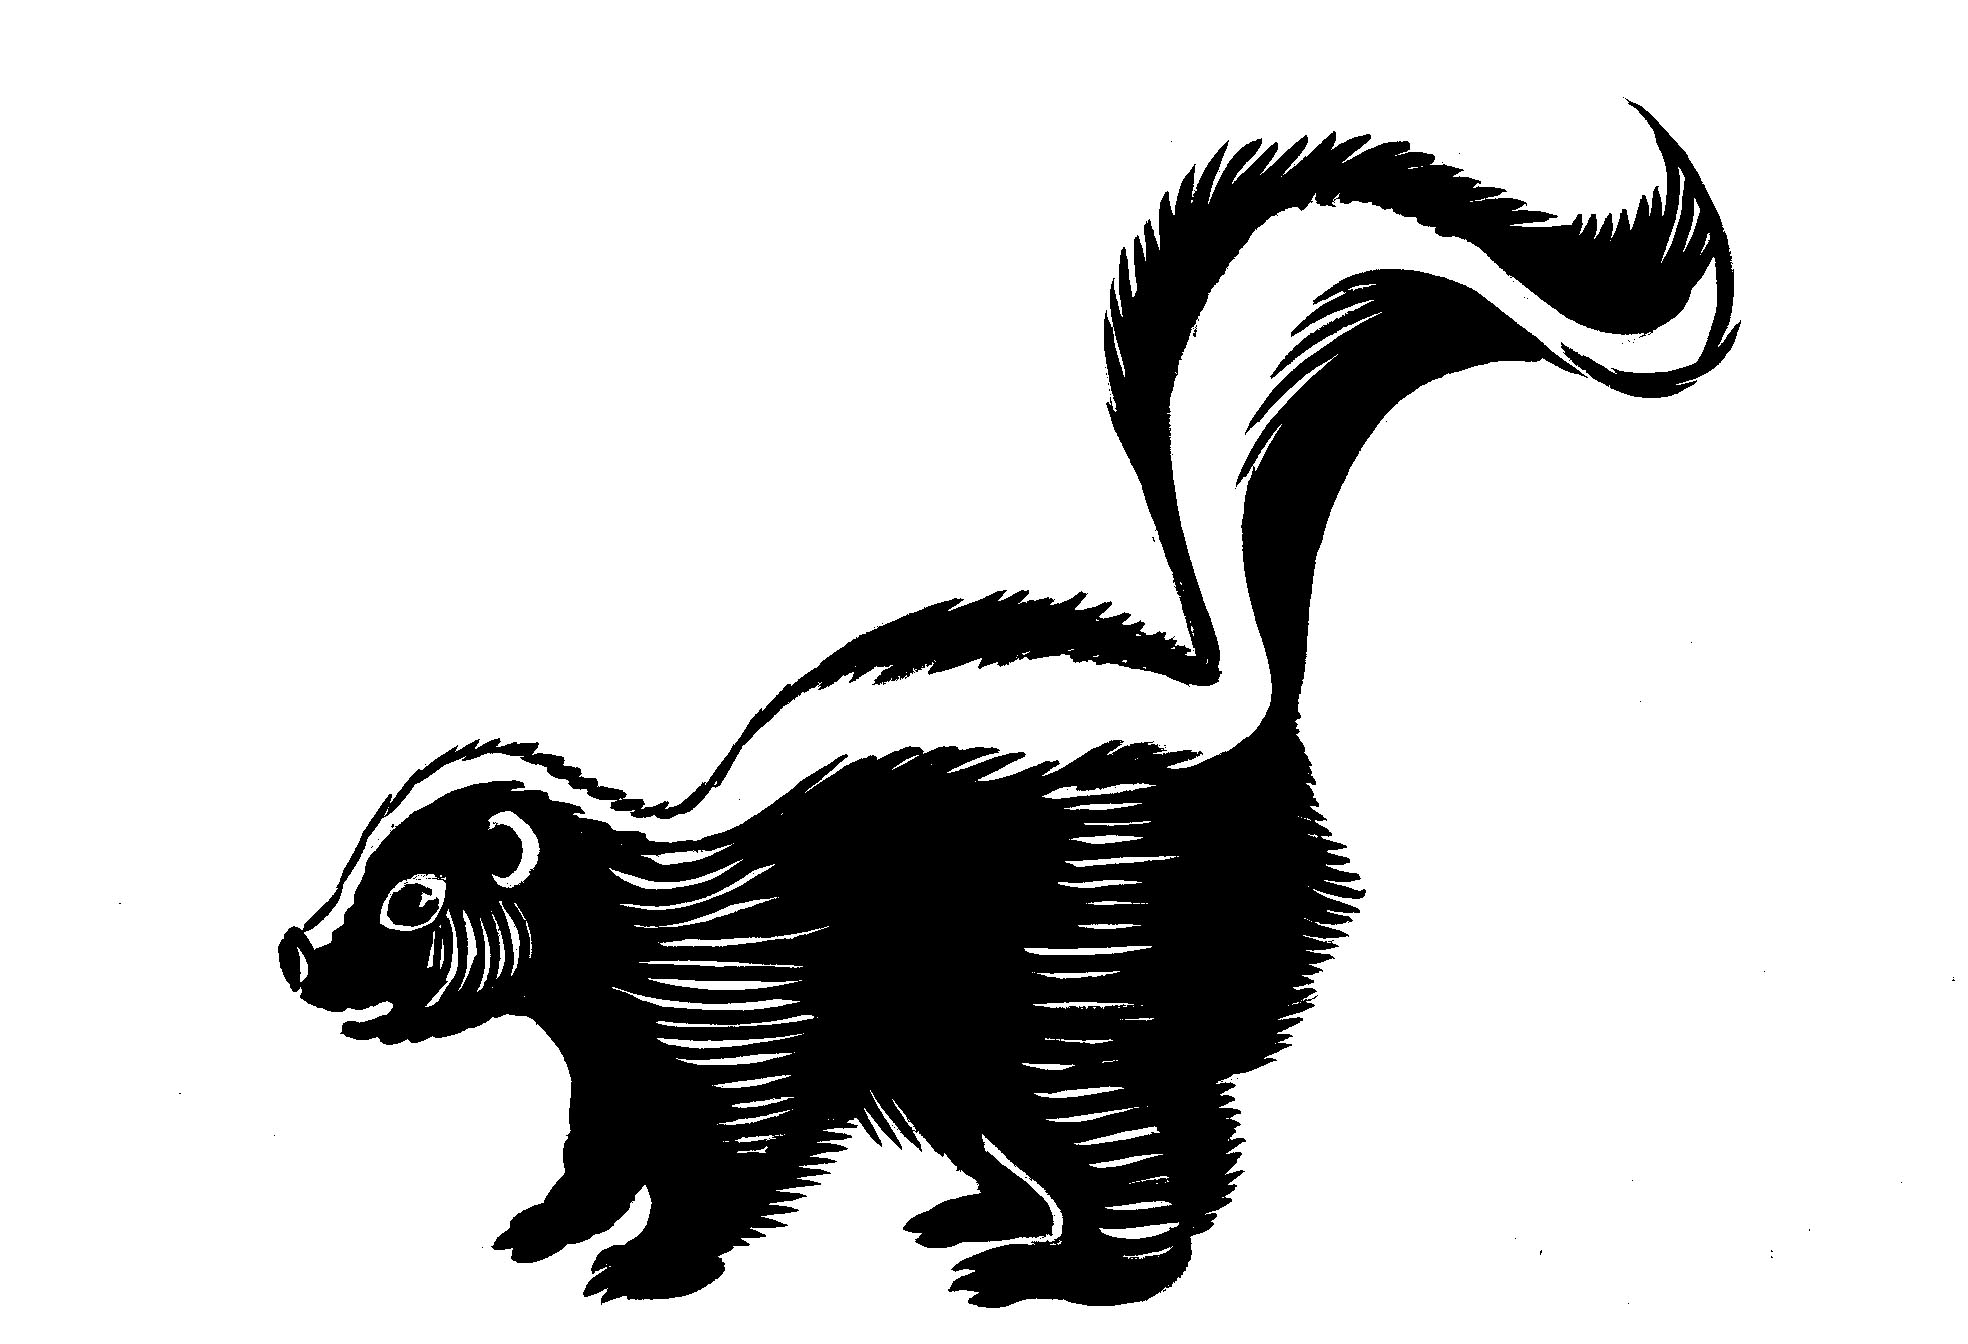 Clip art skunk